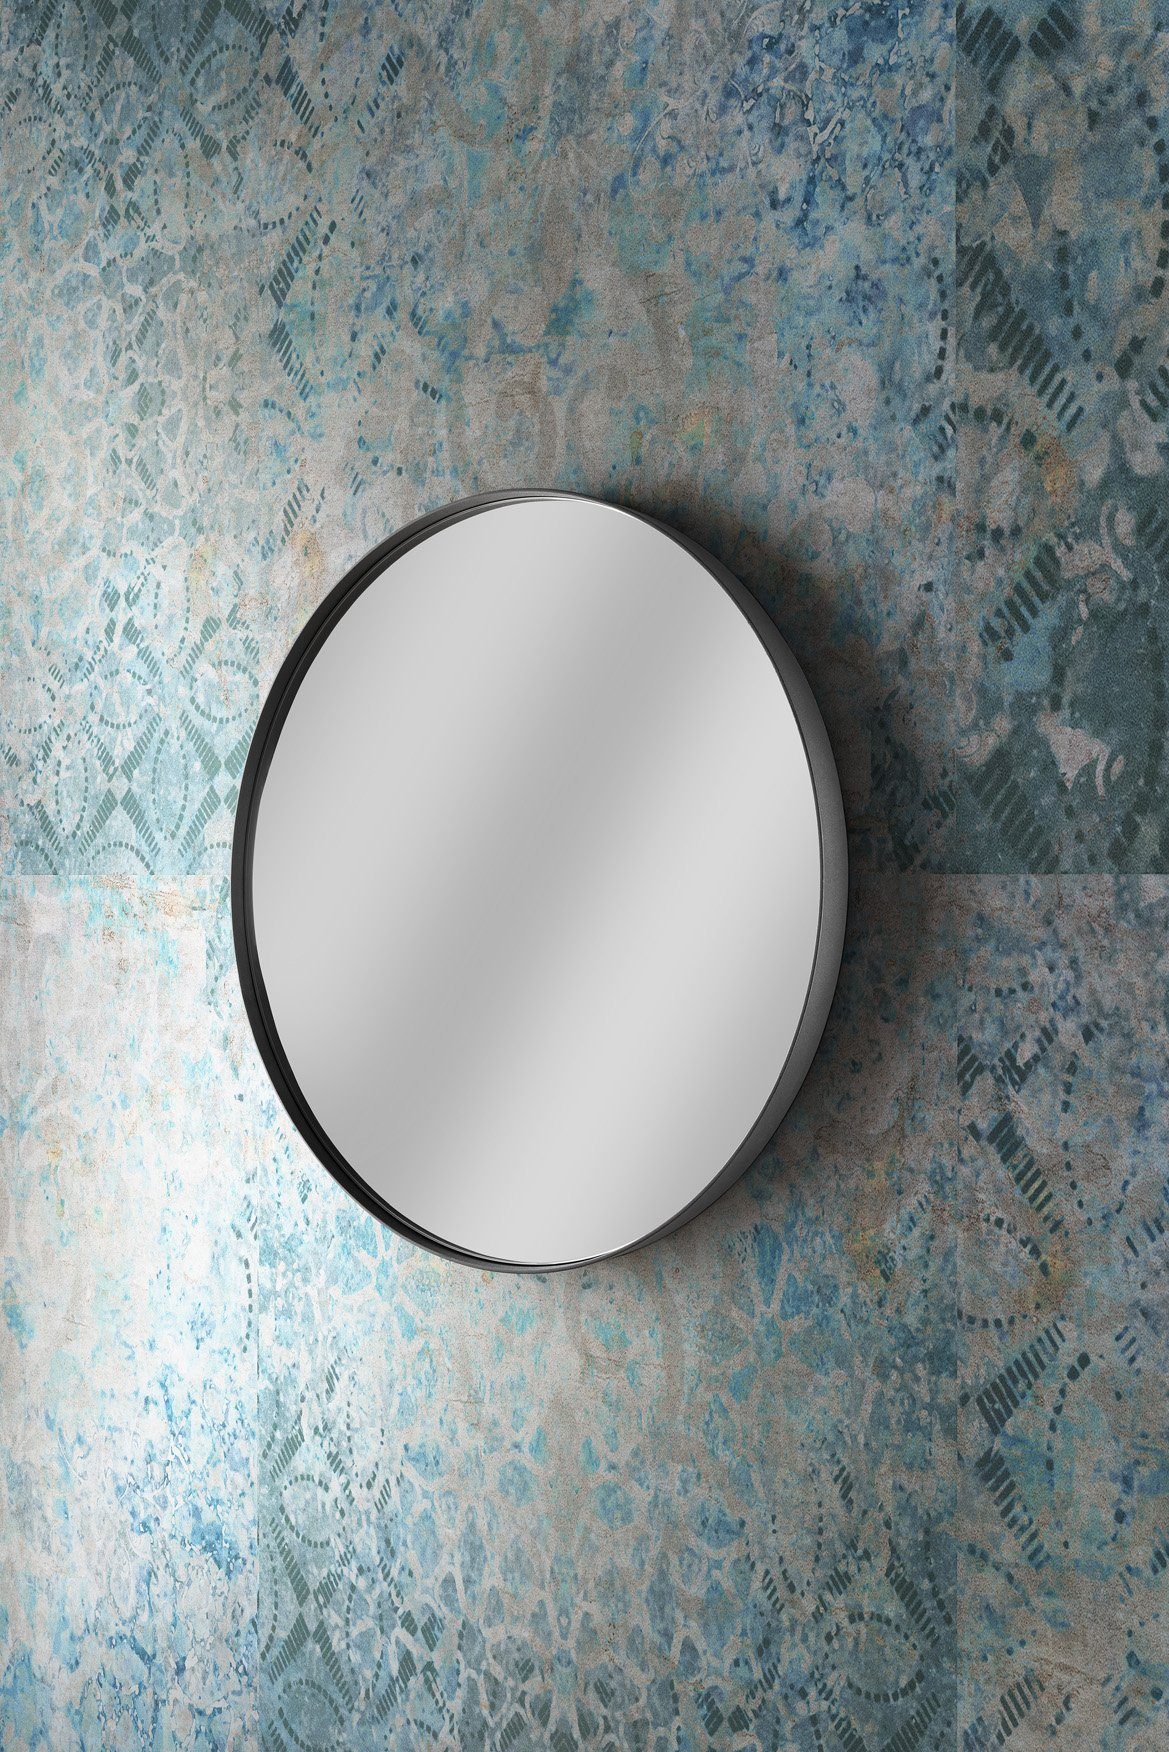 ca. Stahl rund Spiegel Wandspiegel mm, XL, 90 schwarz ROUND More2Home matt 3 cm